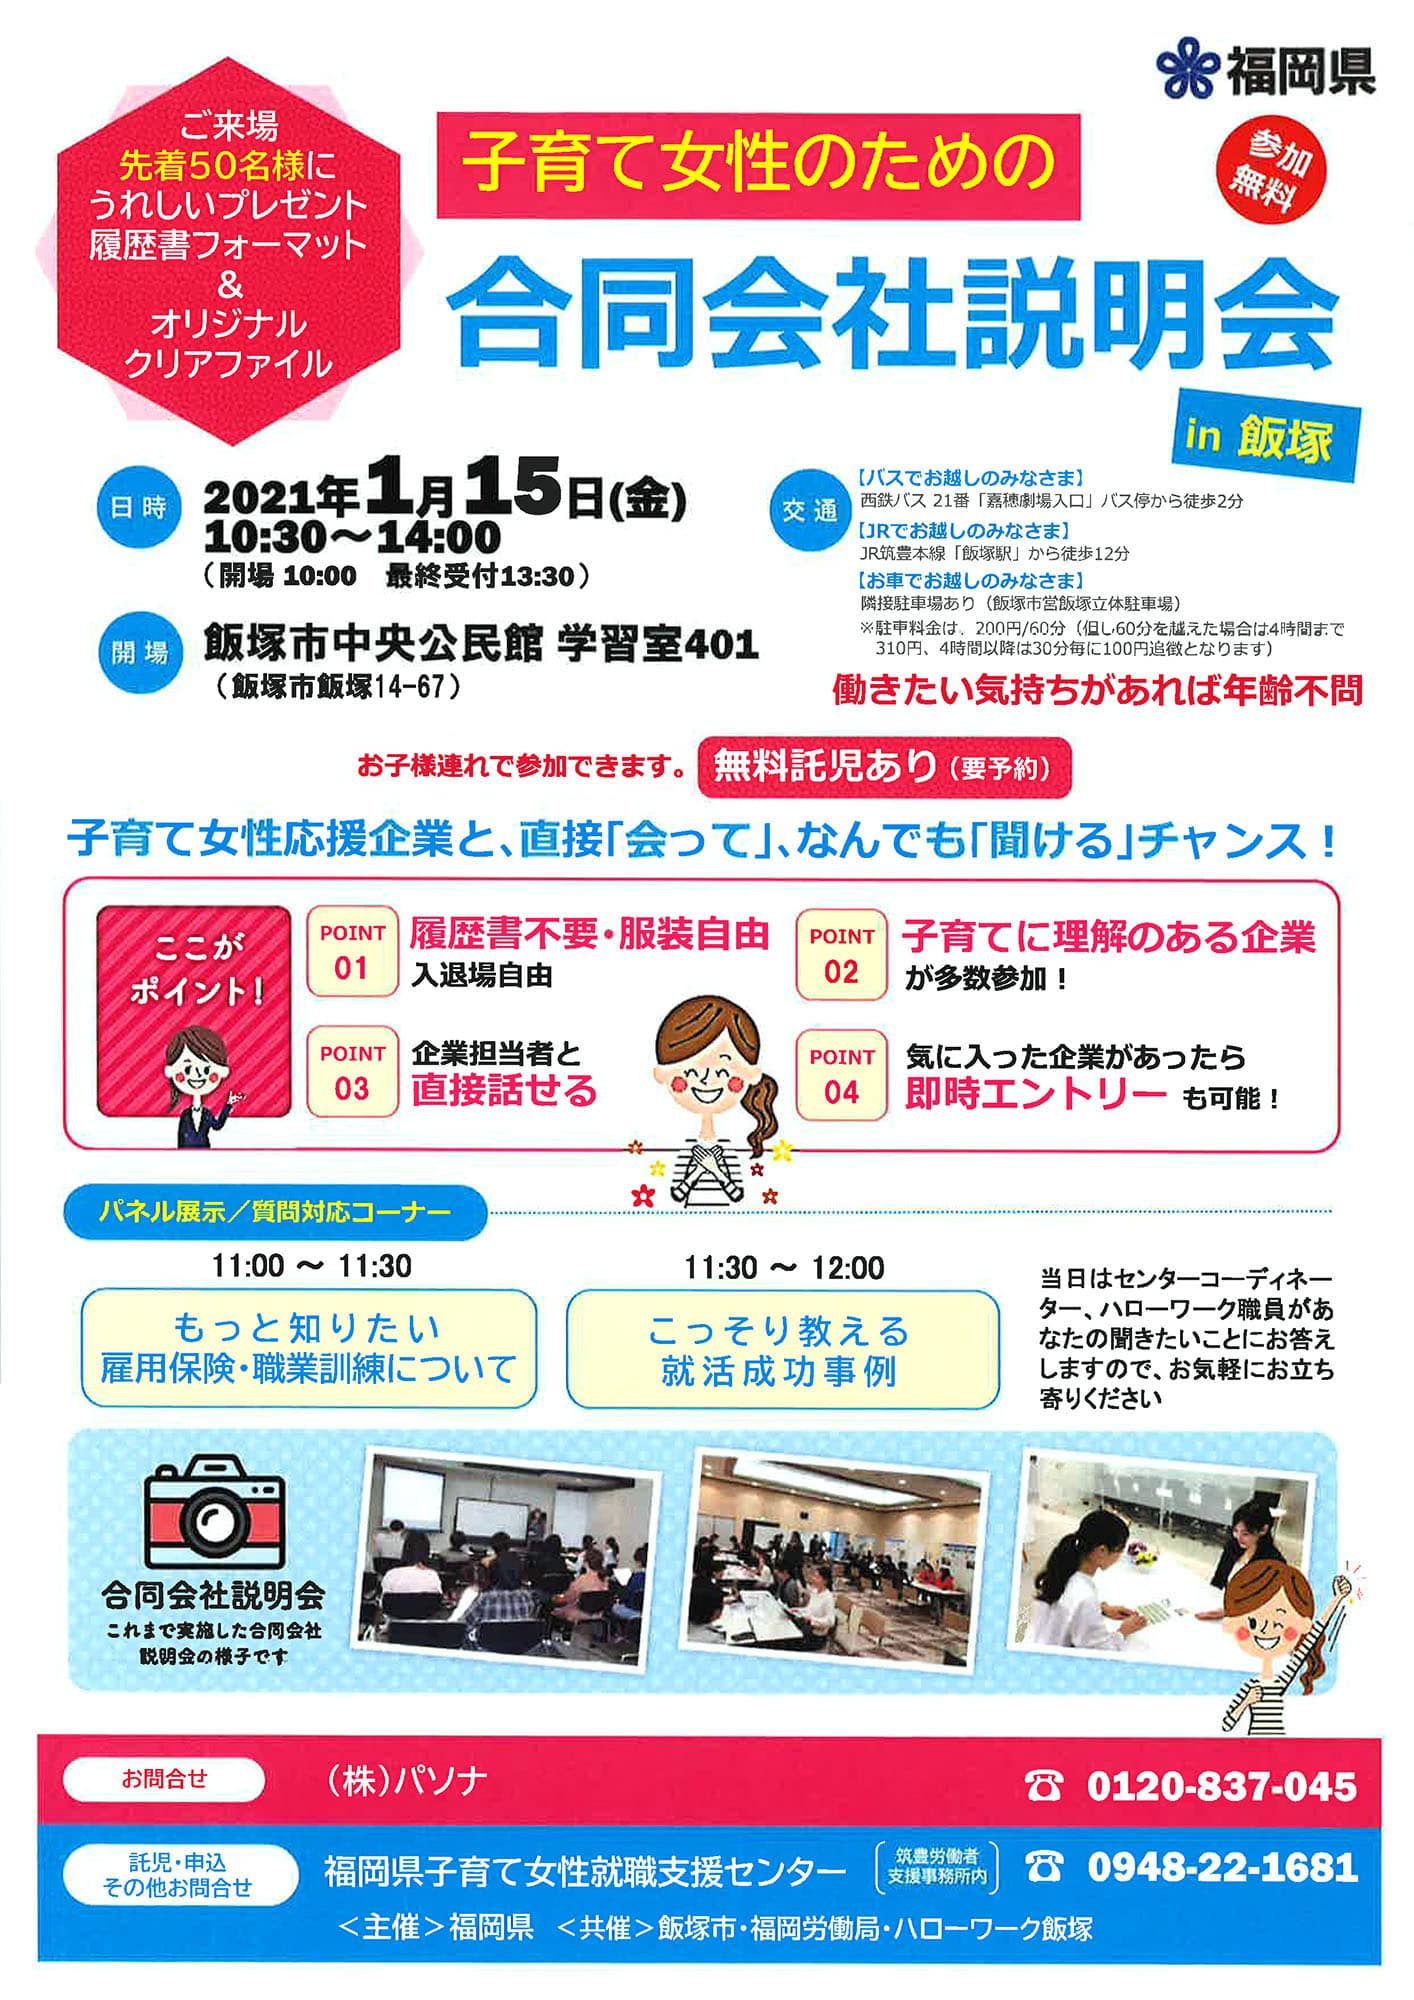 子育て女性のための合同会社説明会 In 飯塚 2021 E Zuka Event Entrance